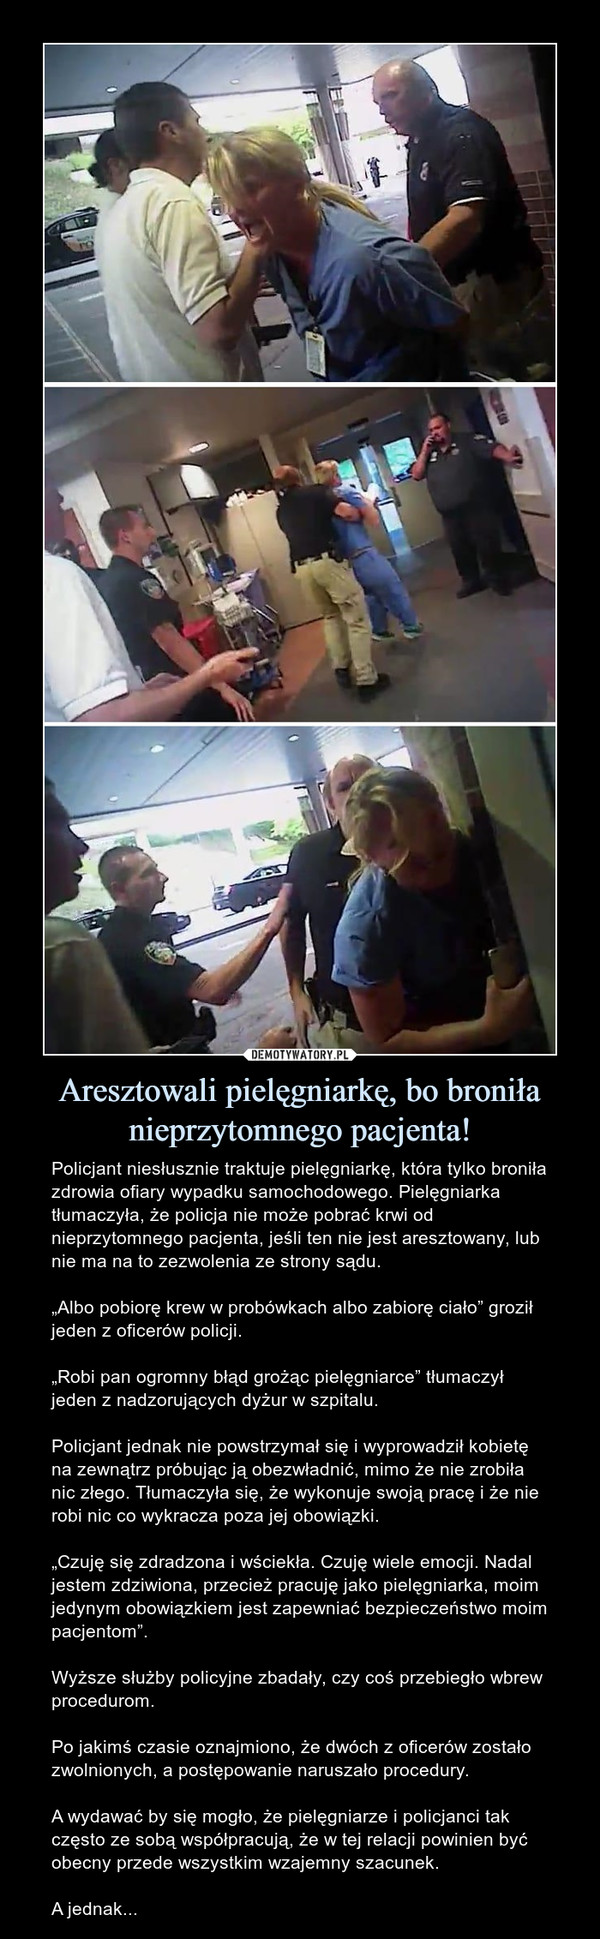 Aresztowali pielęgniarkę, bo broniła nieprzytomnego pacjenta!